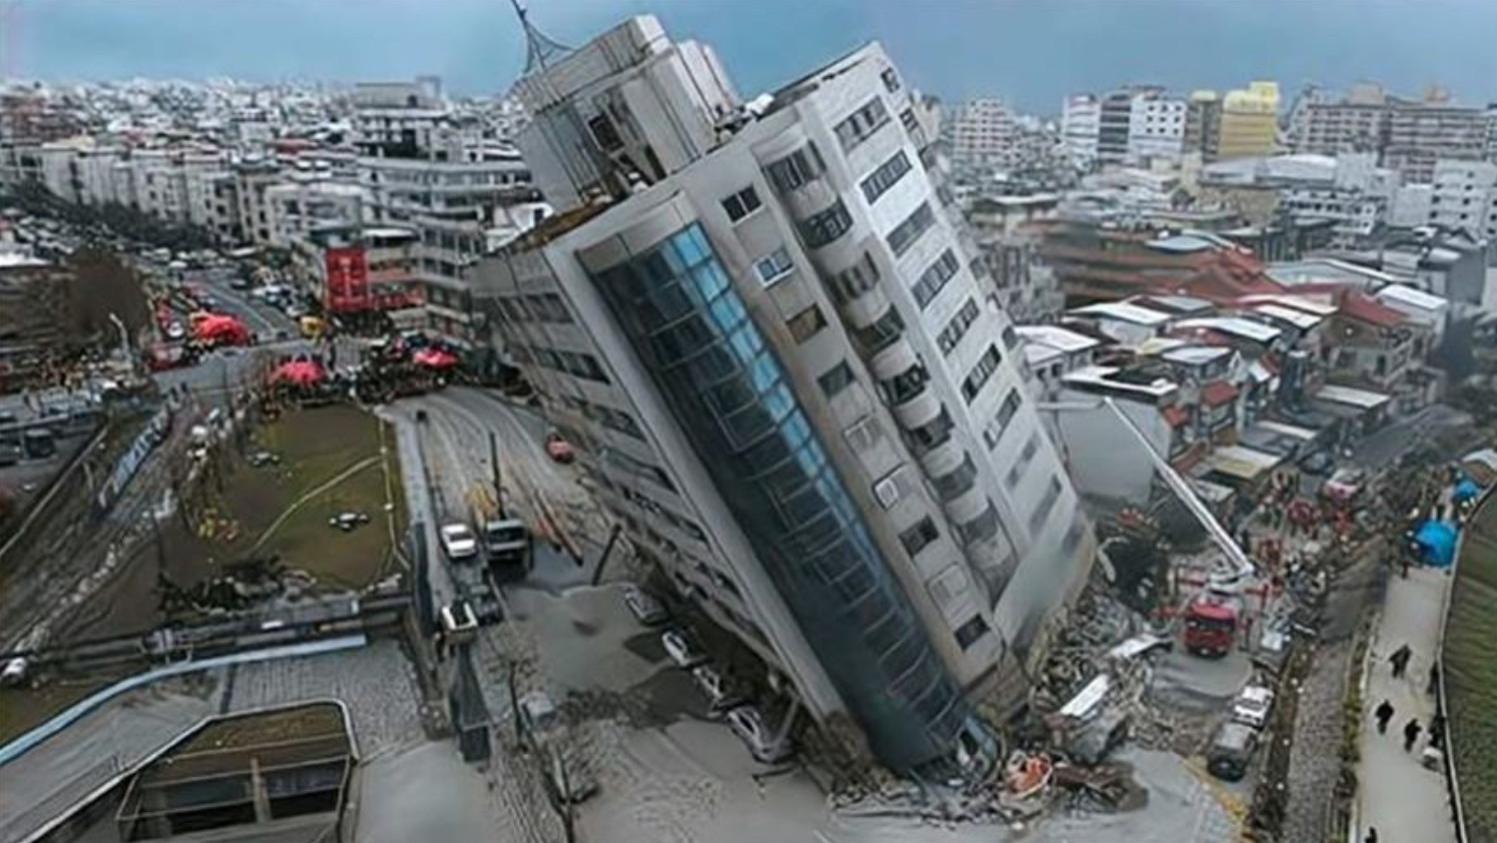 地震发生时,低层和高层哪个安全些?瞧瞧楼房倒塌原因就明白!